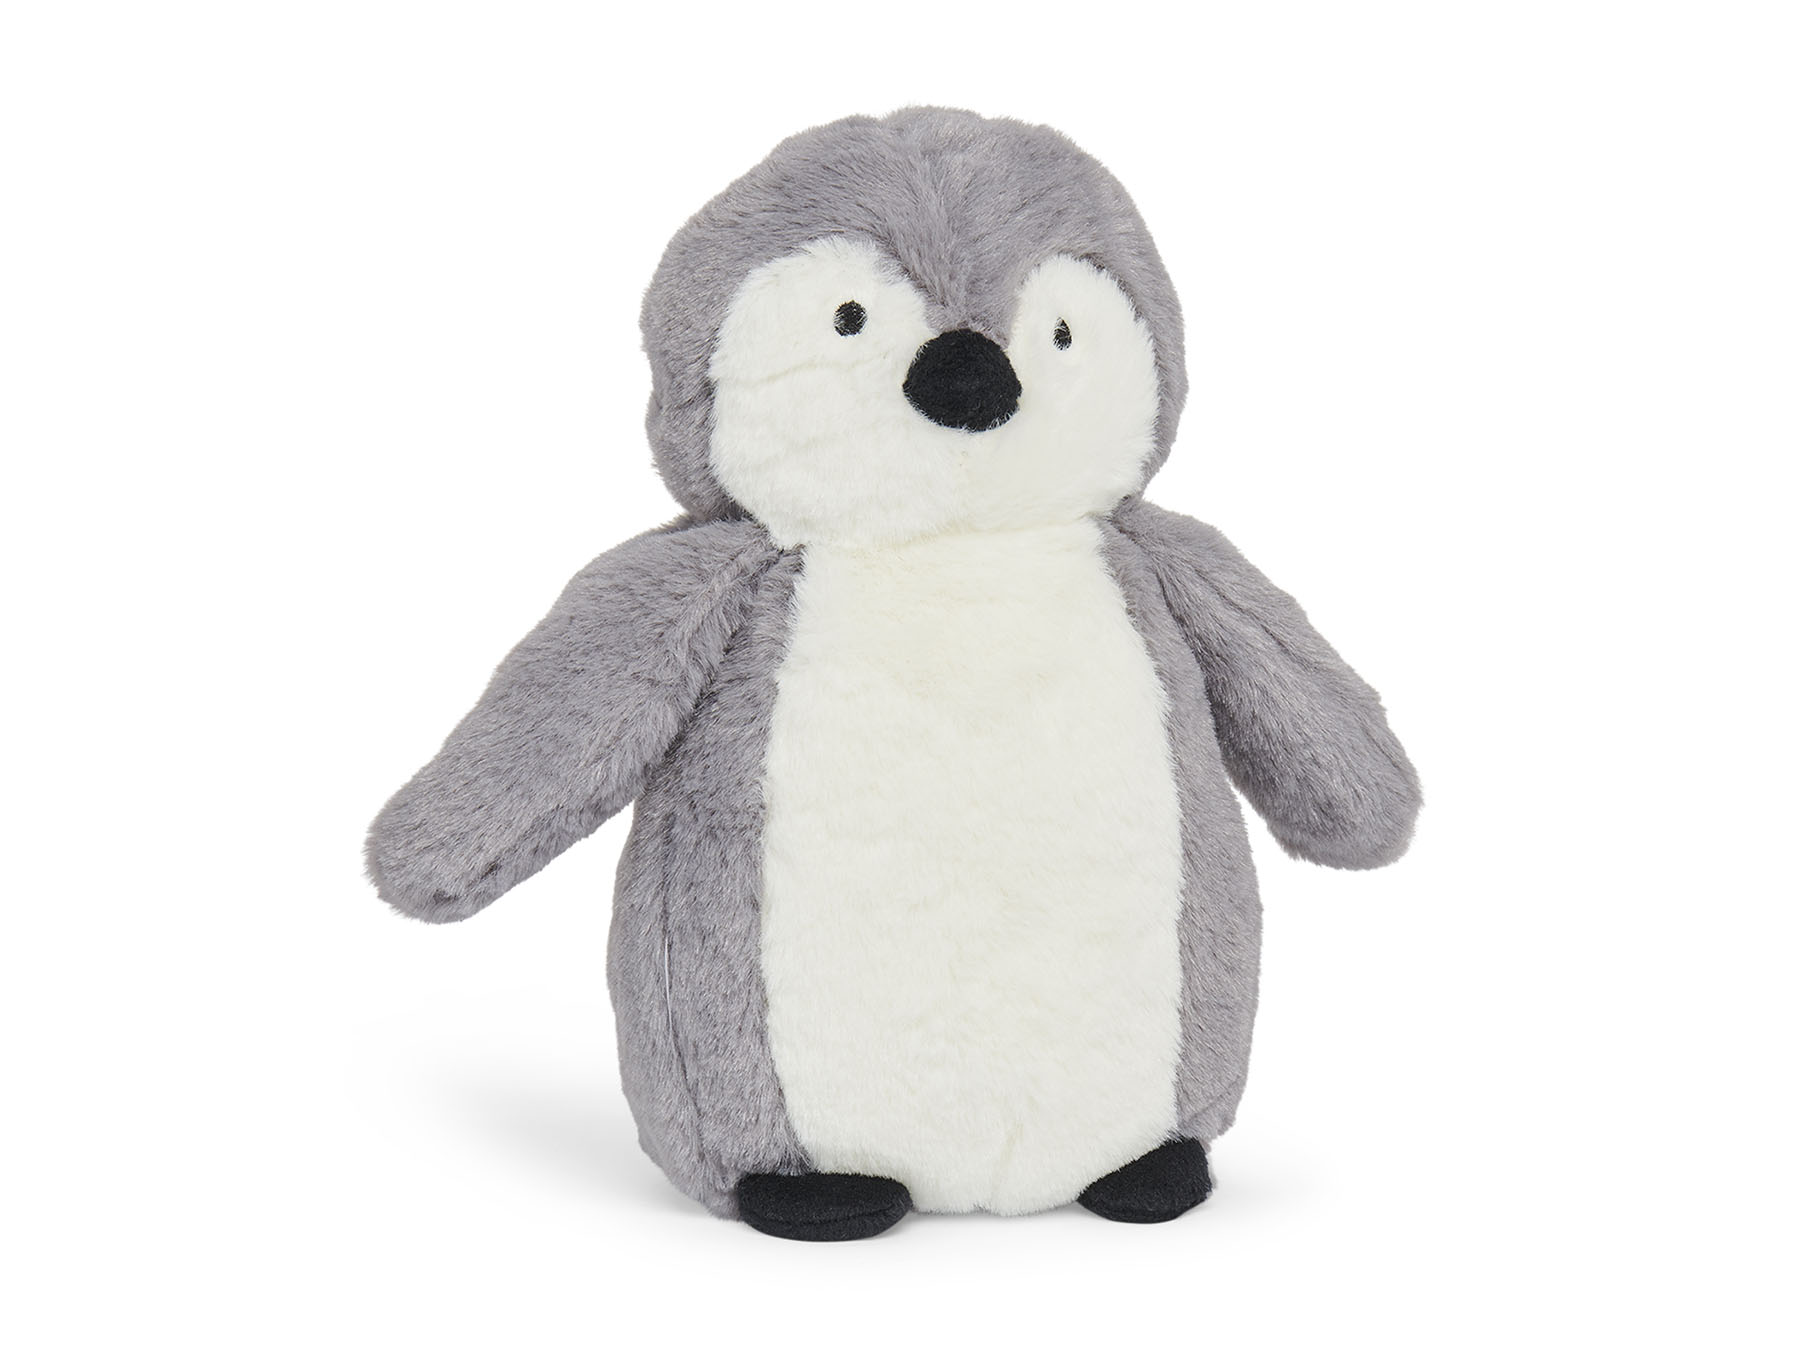 Knuffel pinguïn - Storm grey